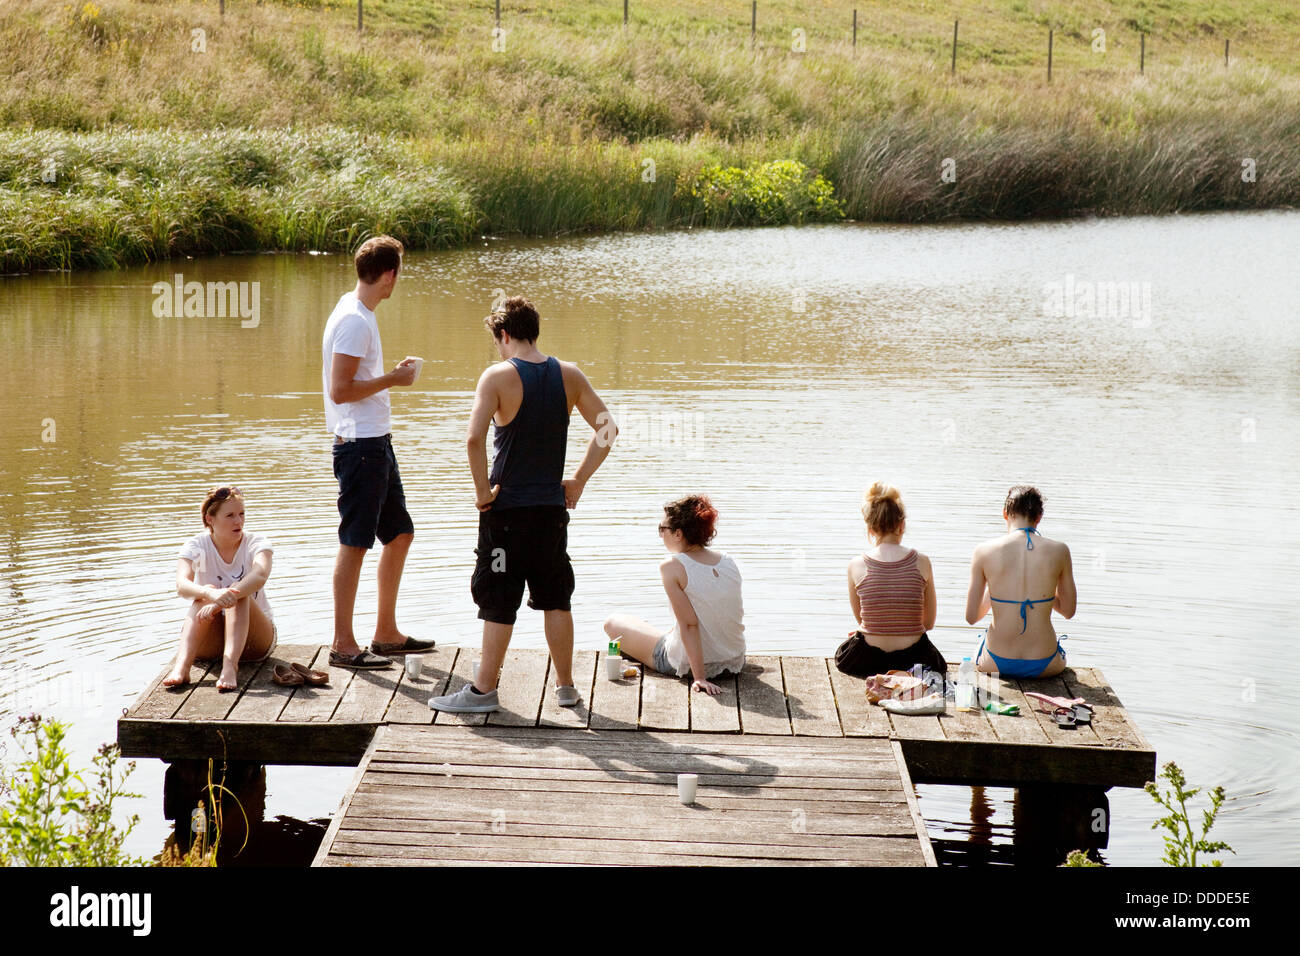 Verano del Reino Unido; un grupo de adolescentes pasando el rato y hablando en un embarcadero junto a un lago en verano, Lambourn, Berkshire Inglaterra Reino Unido Foto de stock